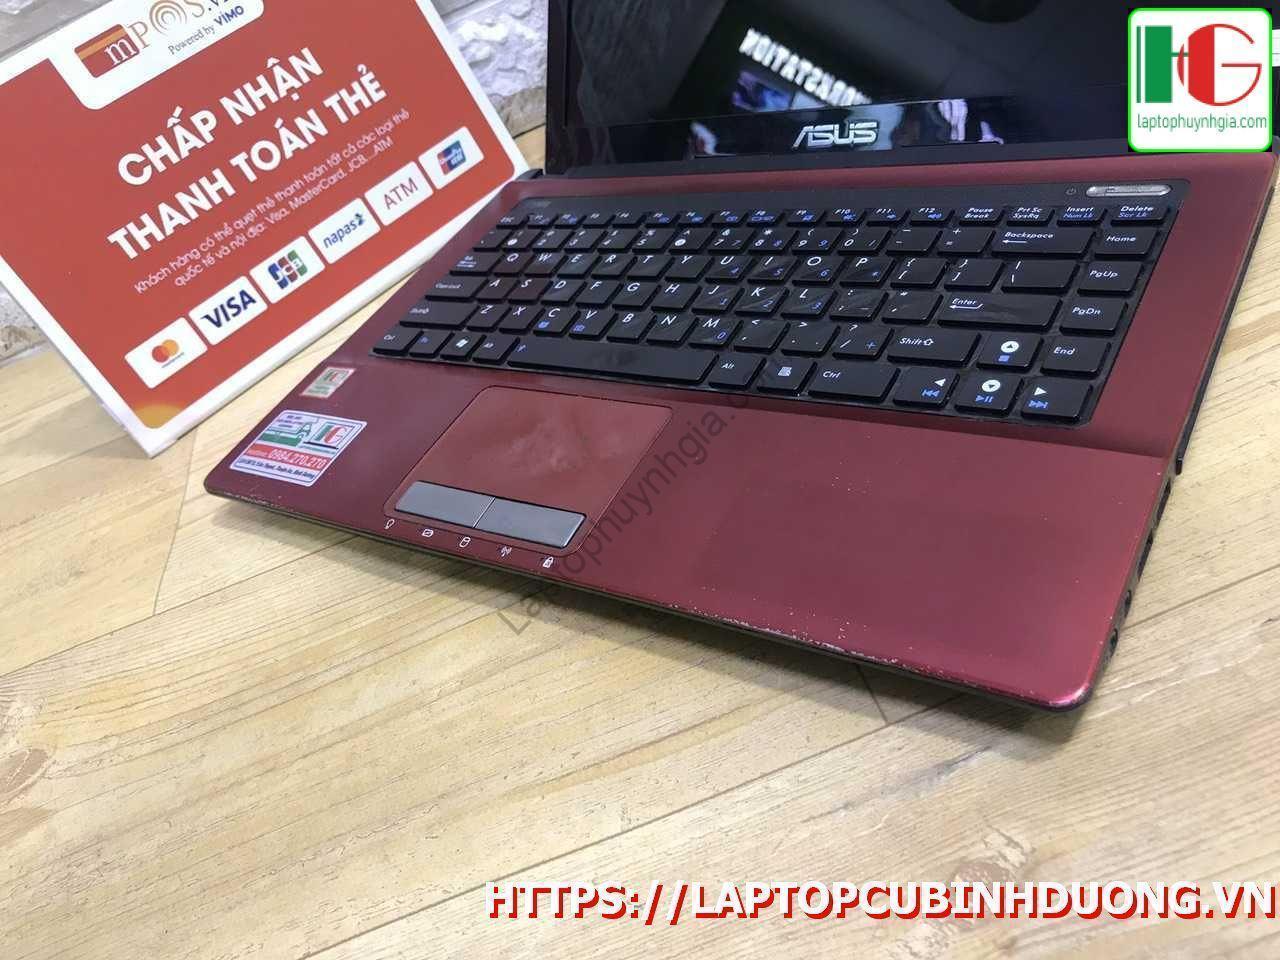 Laptop Asus K43j I3 2310m 3g 500g Laptopcubinhduong.vn 3 [kích Thước Gốc] Result